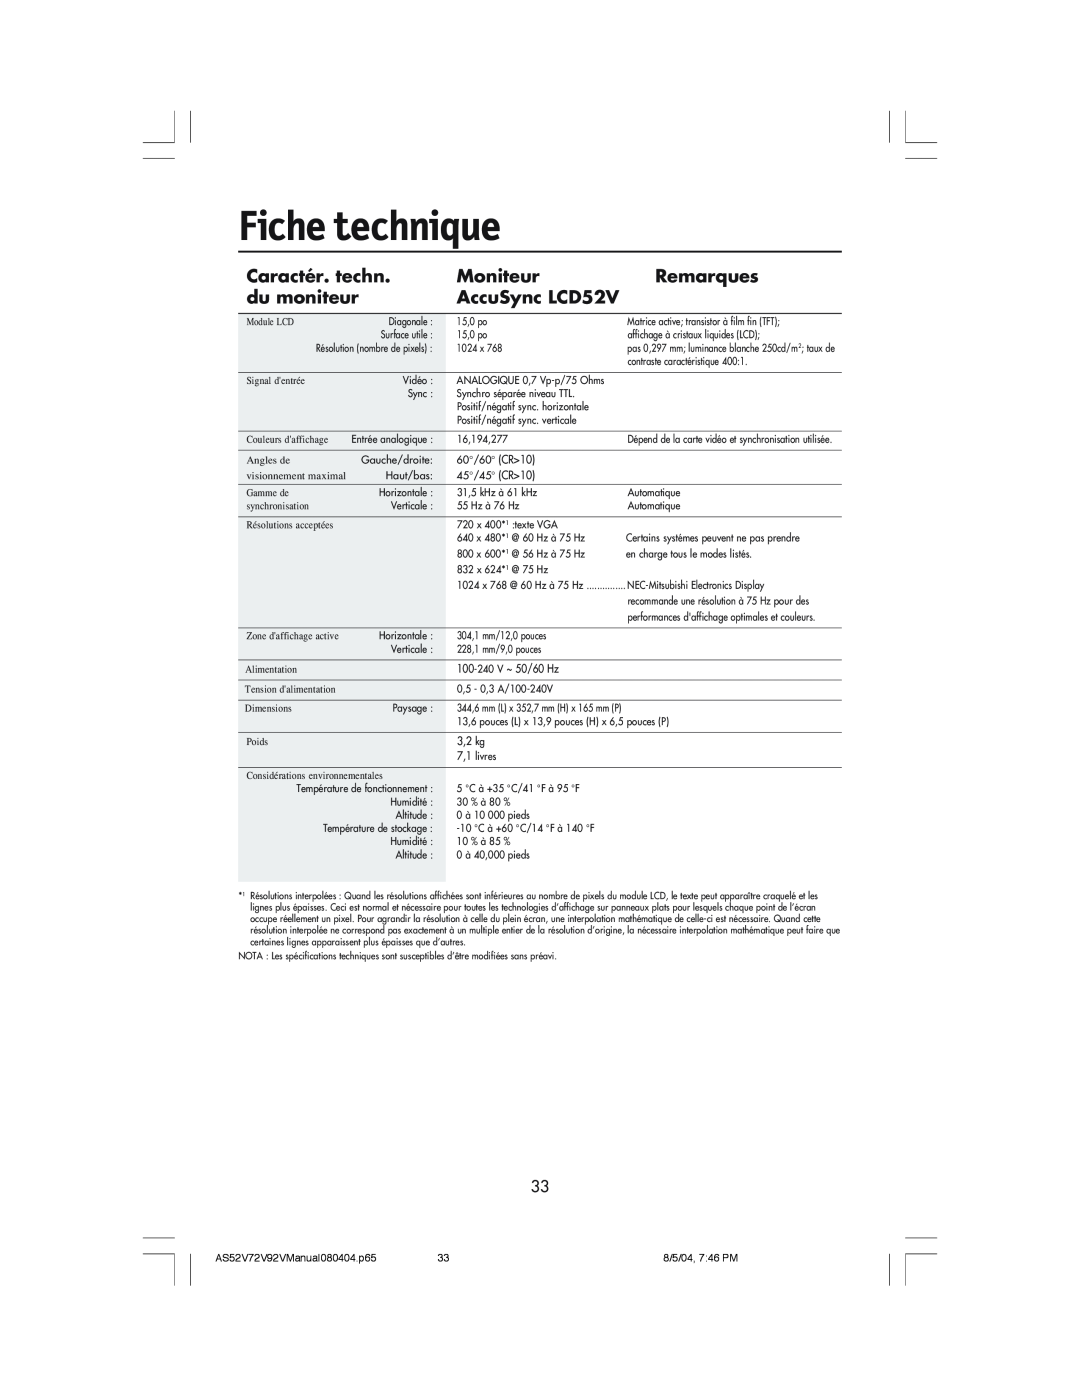 NEC LCD72V manual Fiche technique, Caractér. techn, Moniteur, Remarques, du moniteur, AccuSync LCD52V 